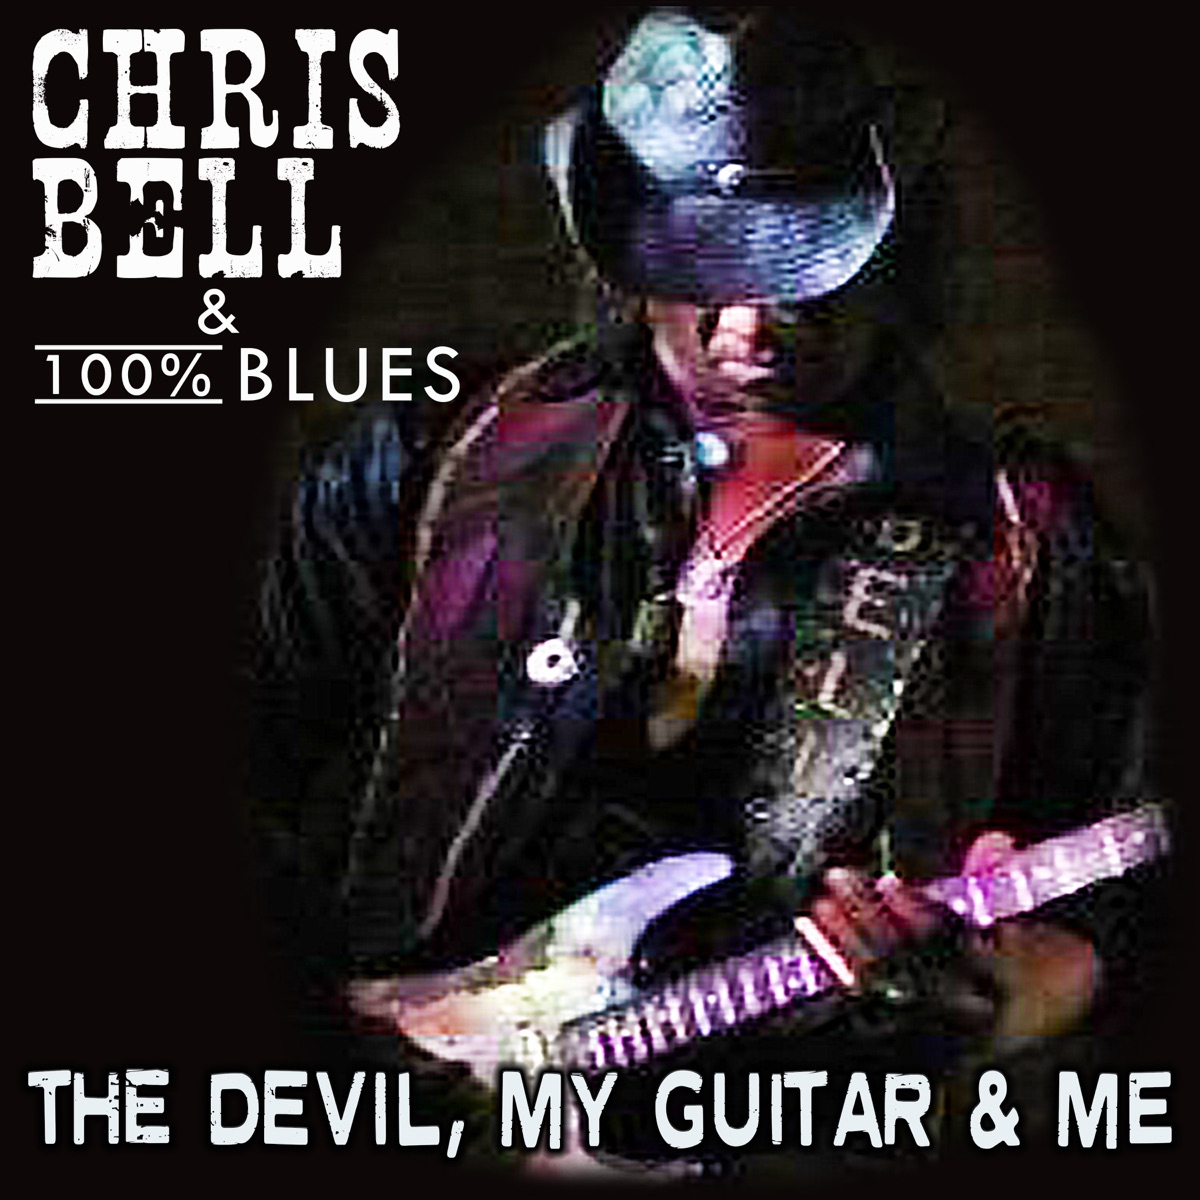 The Devil, My Guitar & Me par Chris Bell & 100% Blues sur Apple Music